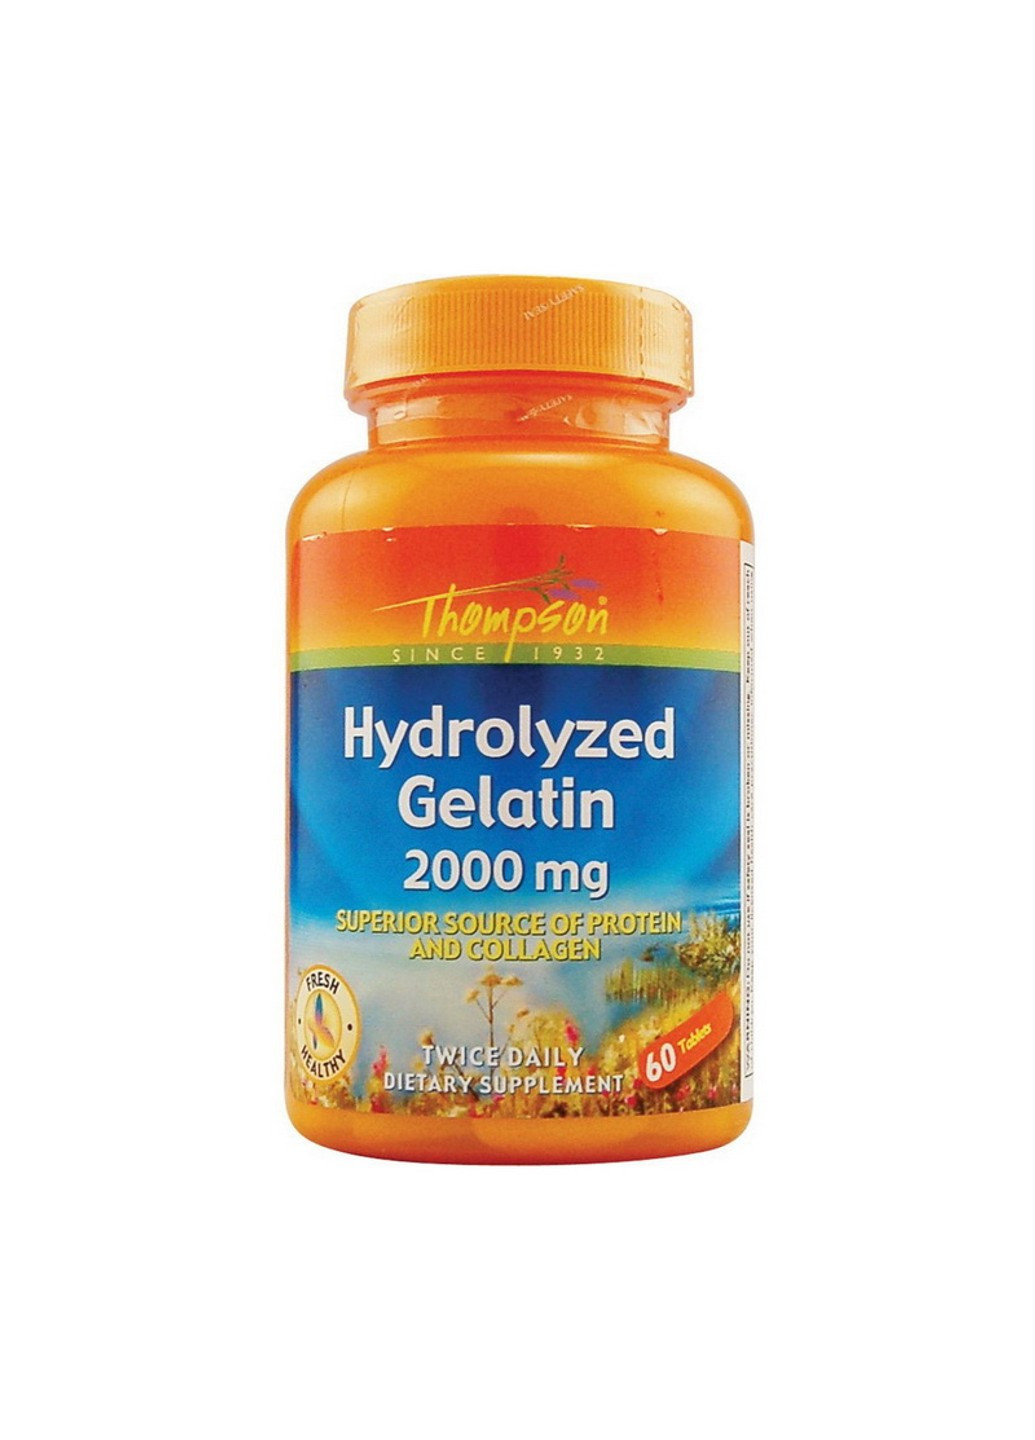 Желатин в капсулах Hydrolyzed Gelatin 2000 mg 60 таблеток Thompson (255407899)